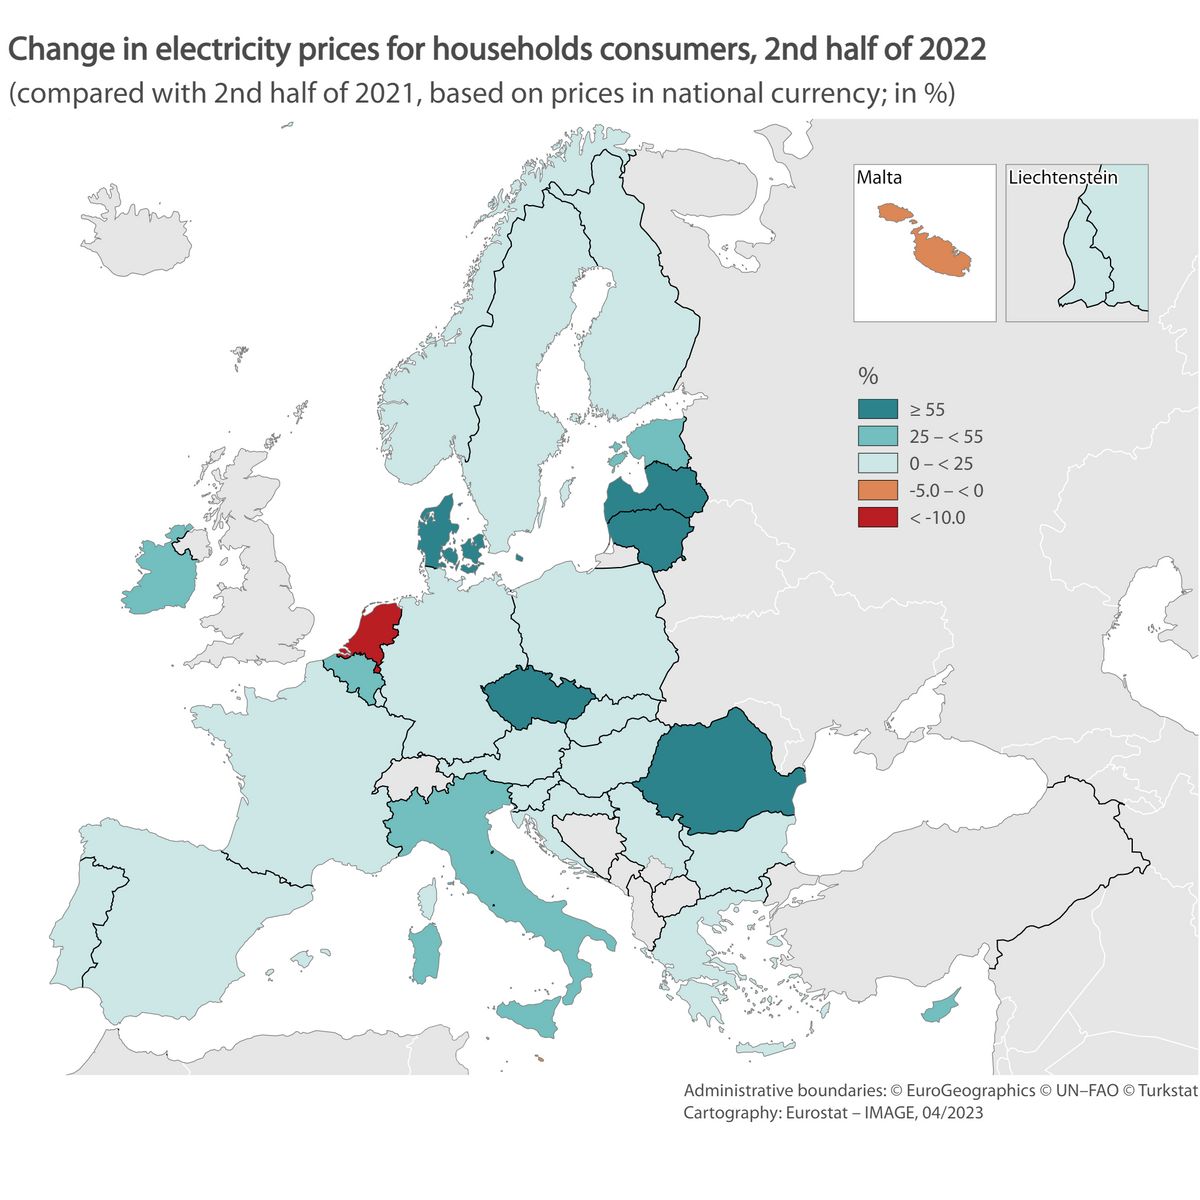 Az áram fogyasztói árának változása országonként 2022 második felében. Forrás: Eurostat